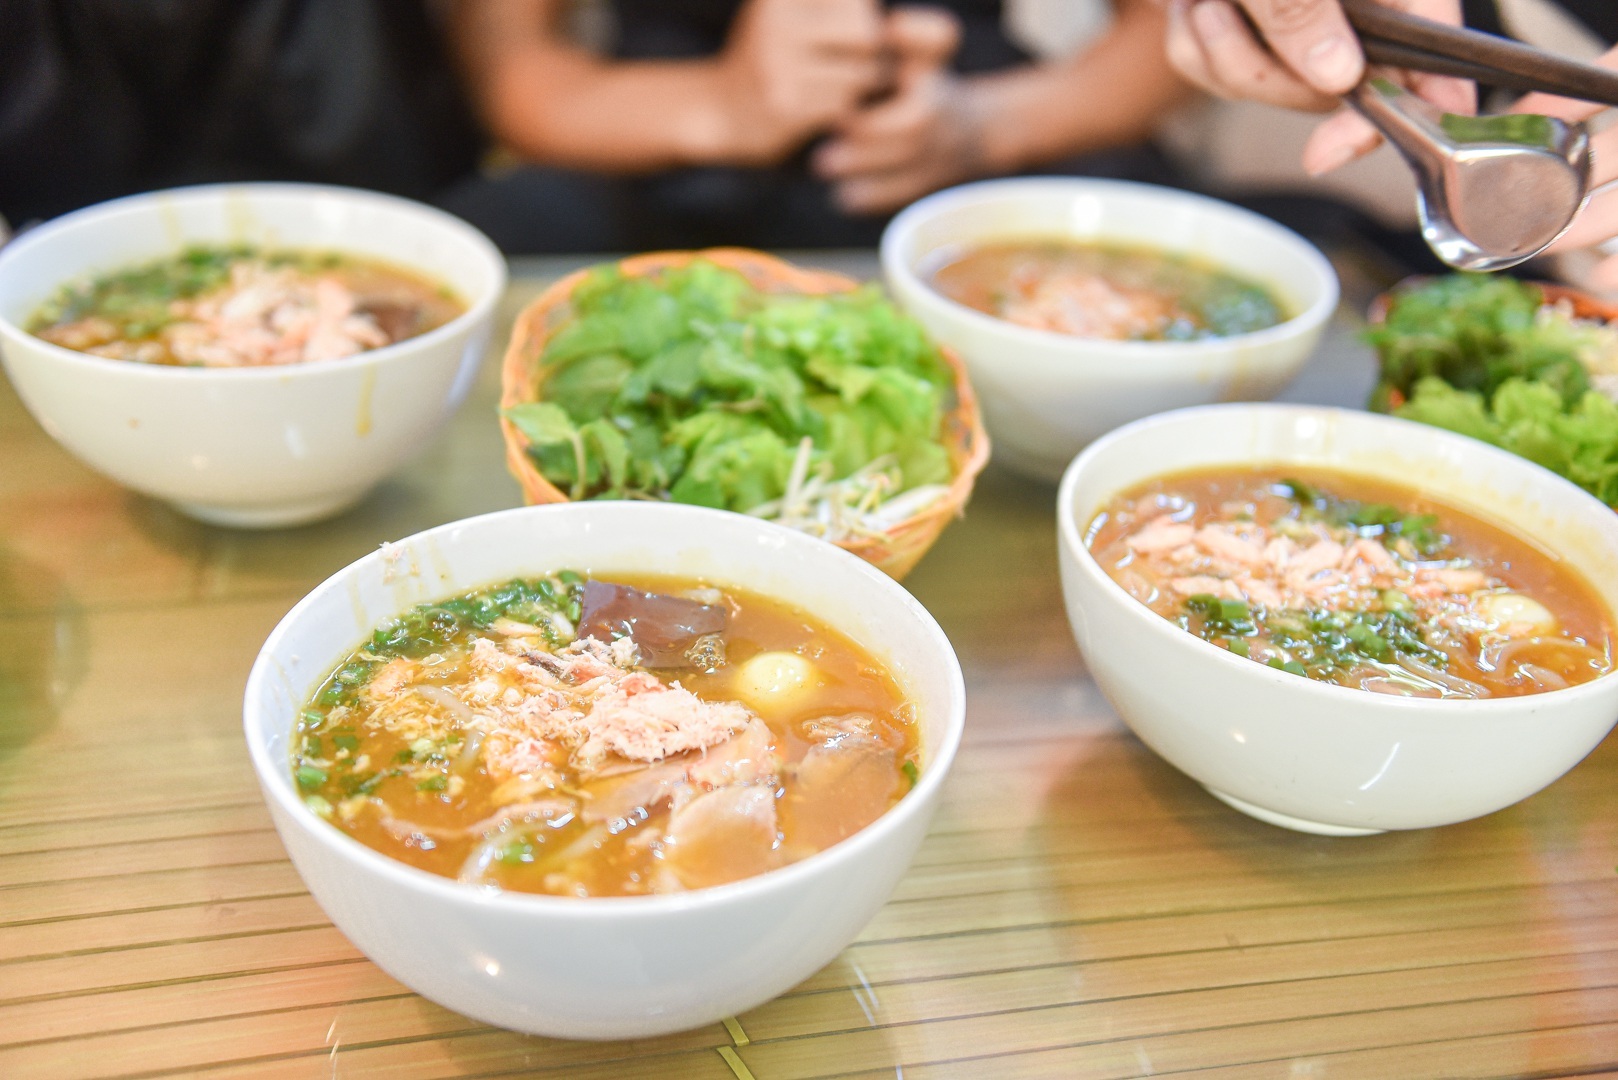 Quán bánh canh 'siêu đông' ở Hà Nội: Sợi bánh đi máy bay ngàn cây số mỗi ngày